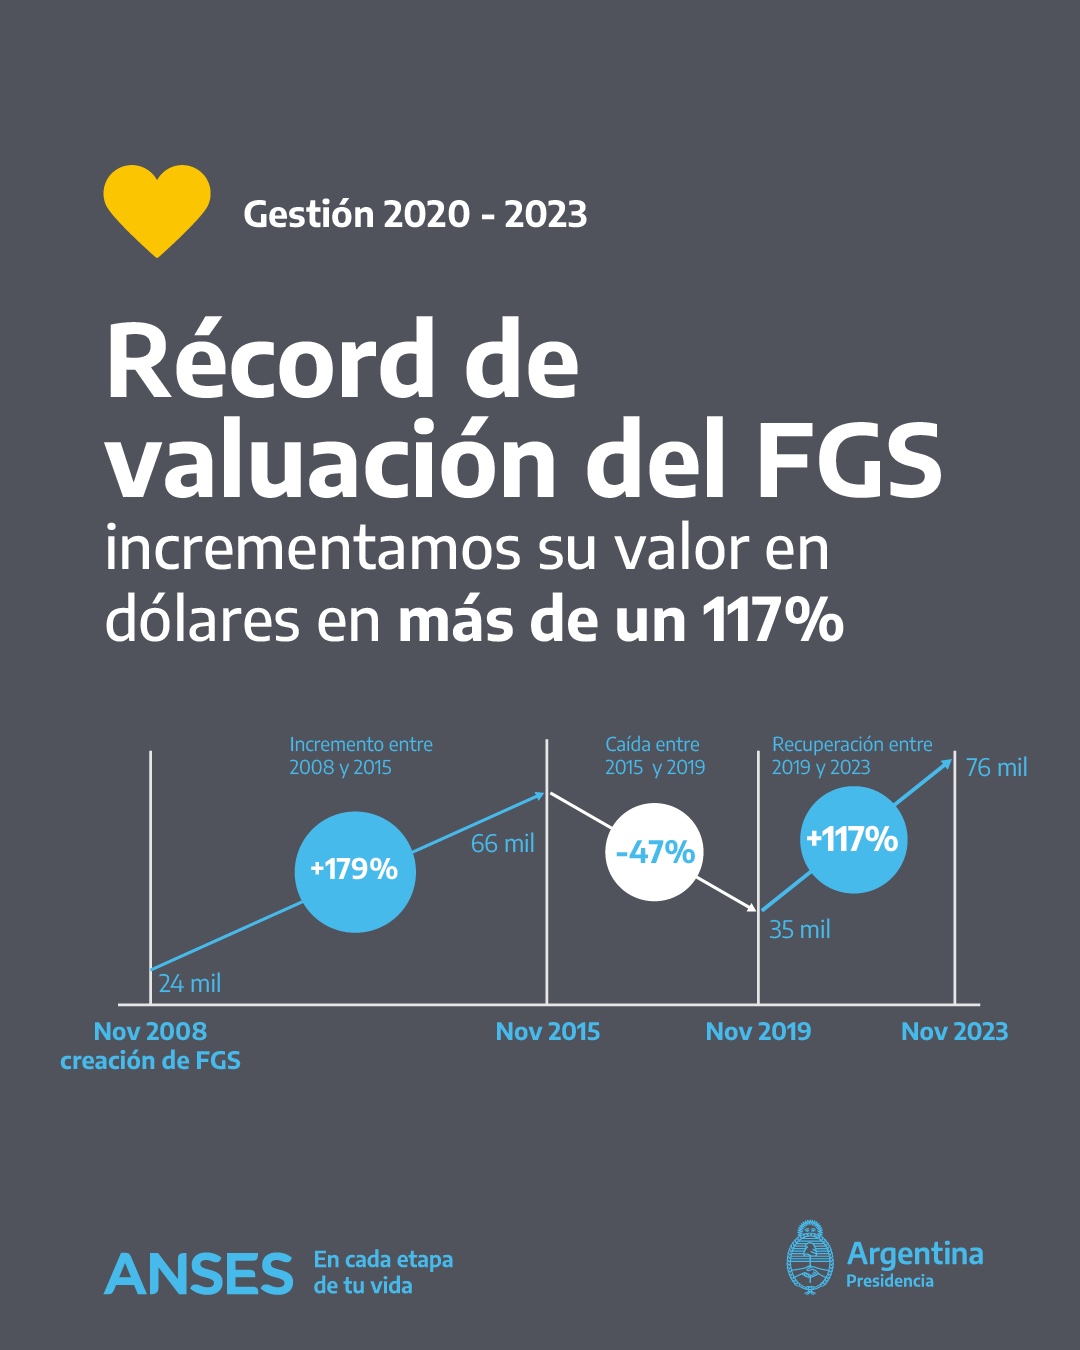 El valor de FGS de ANSES aumentó 117 por ciento en los últimos 4 años